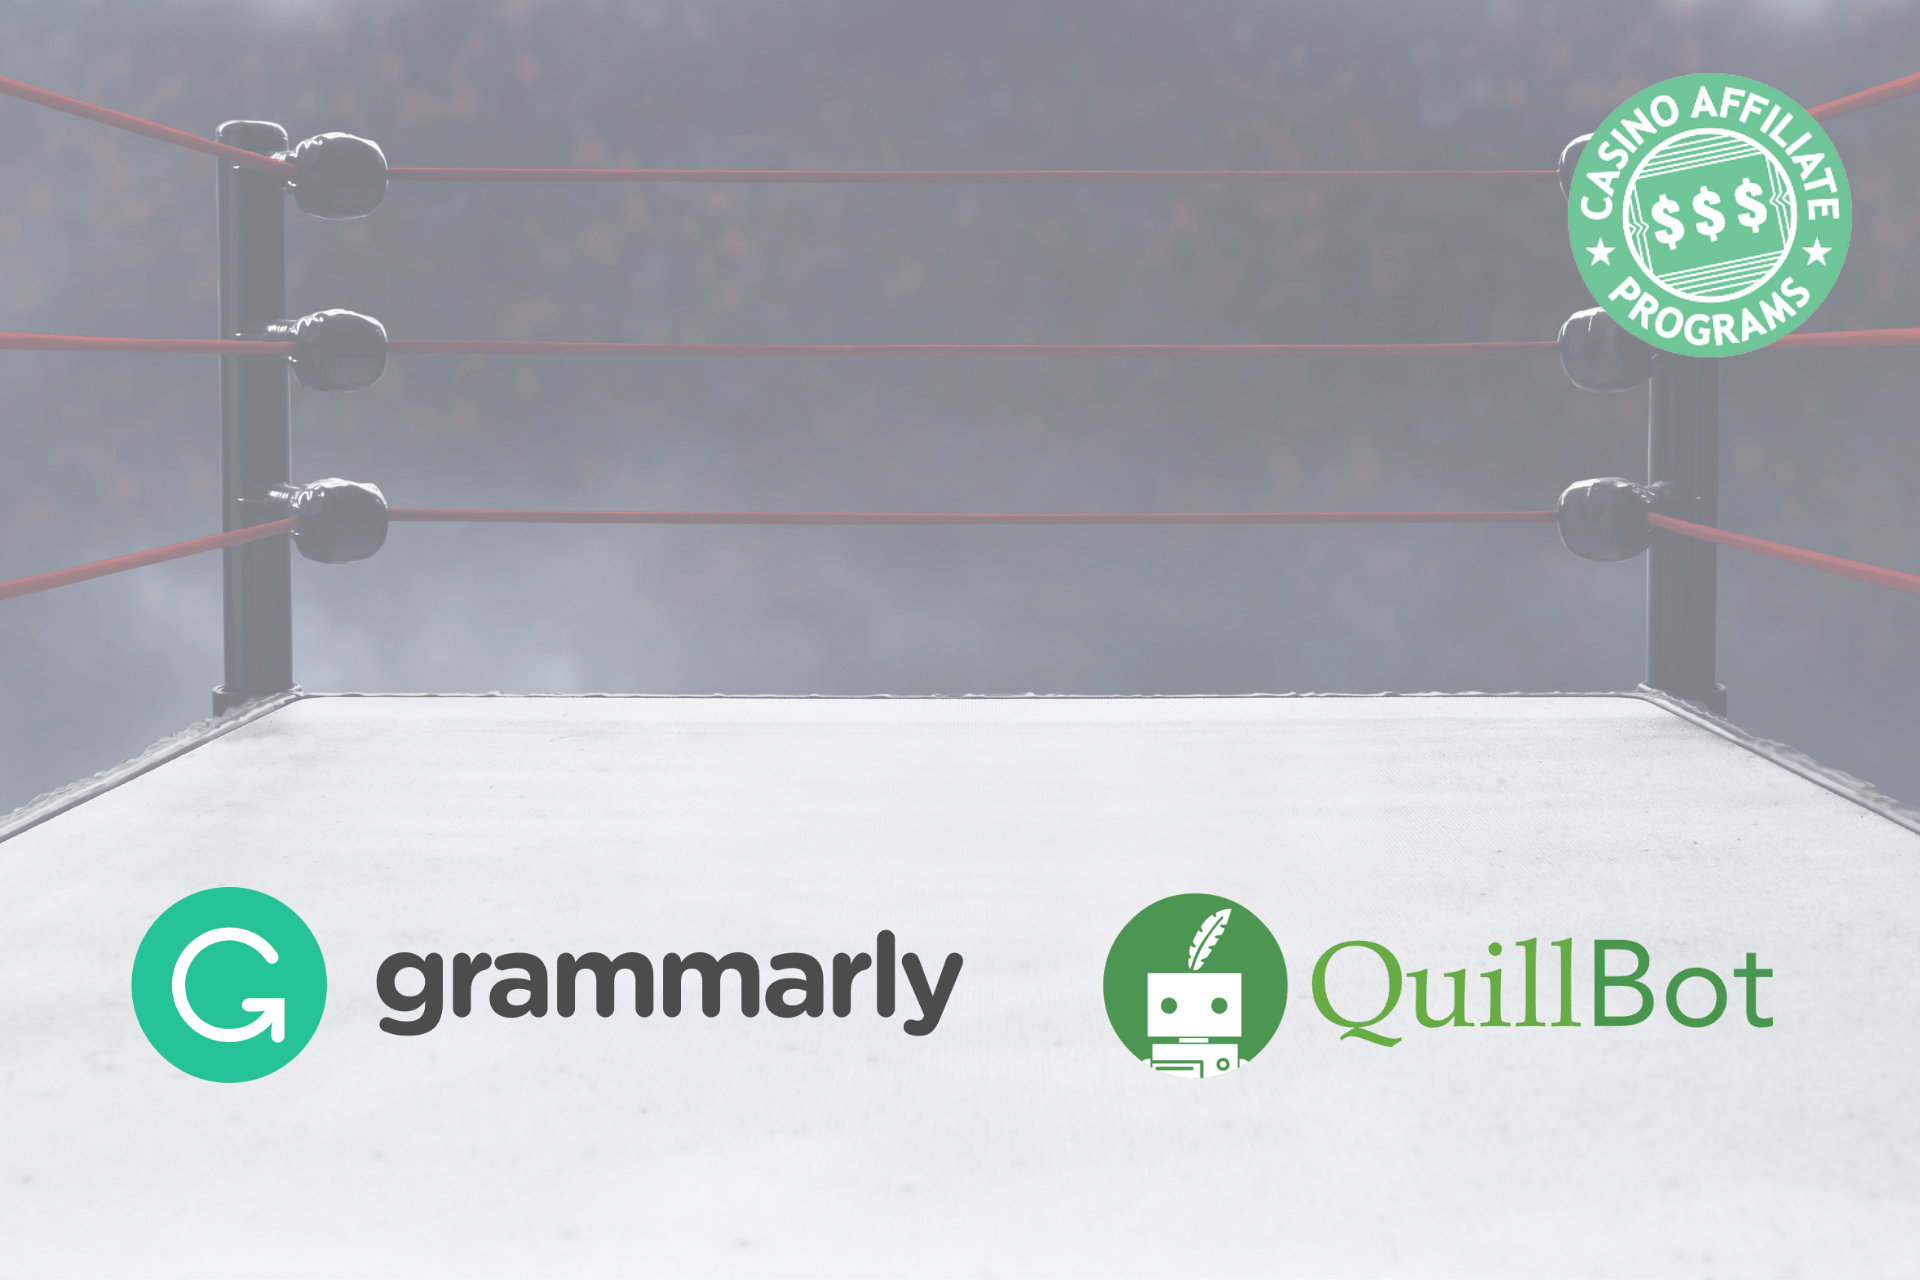 Grammarly vs. Quillbot